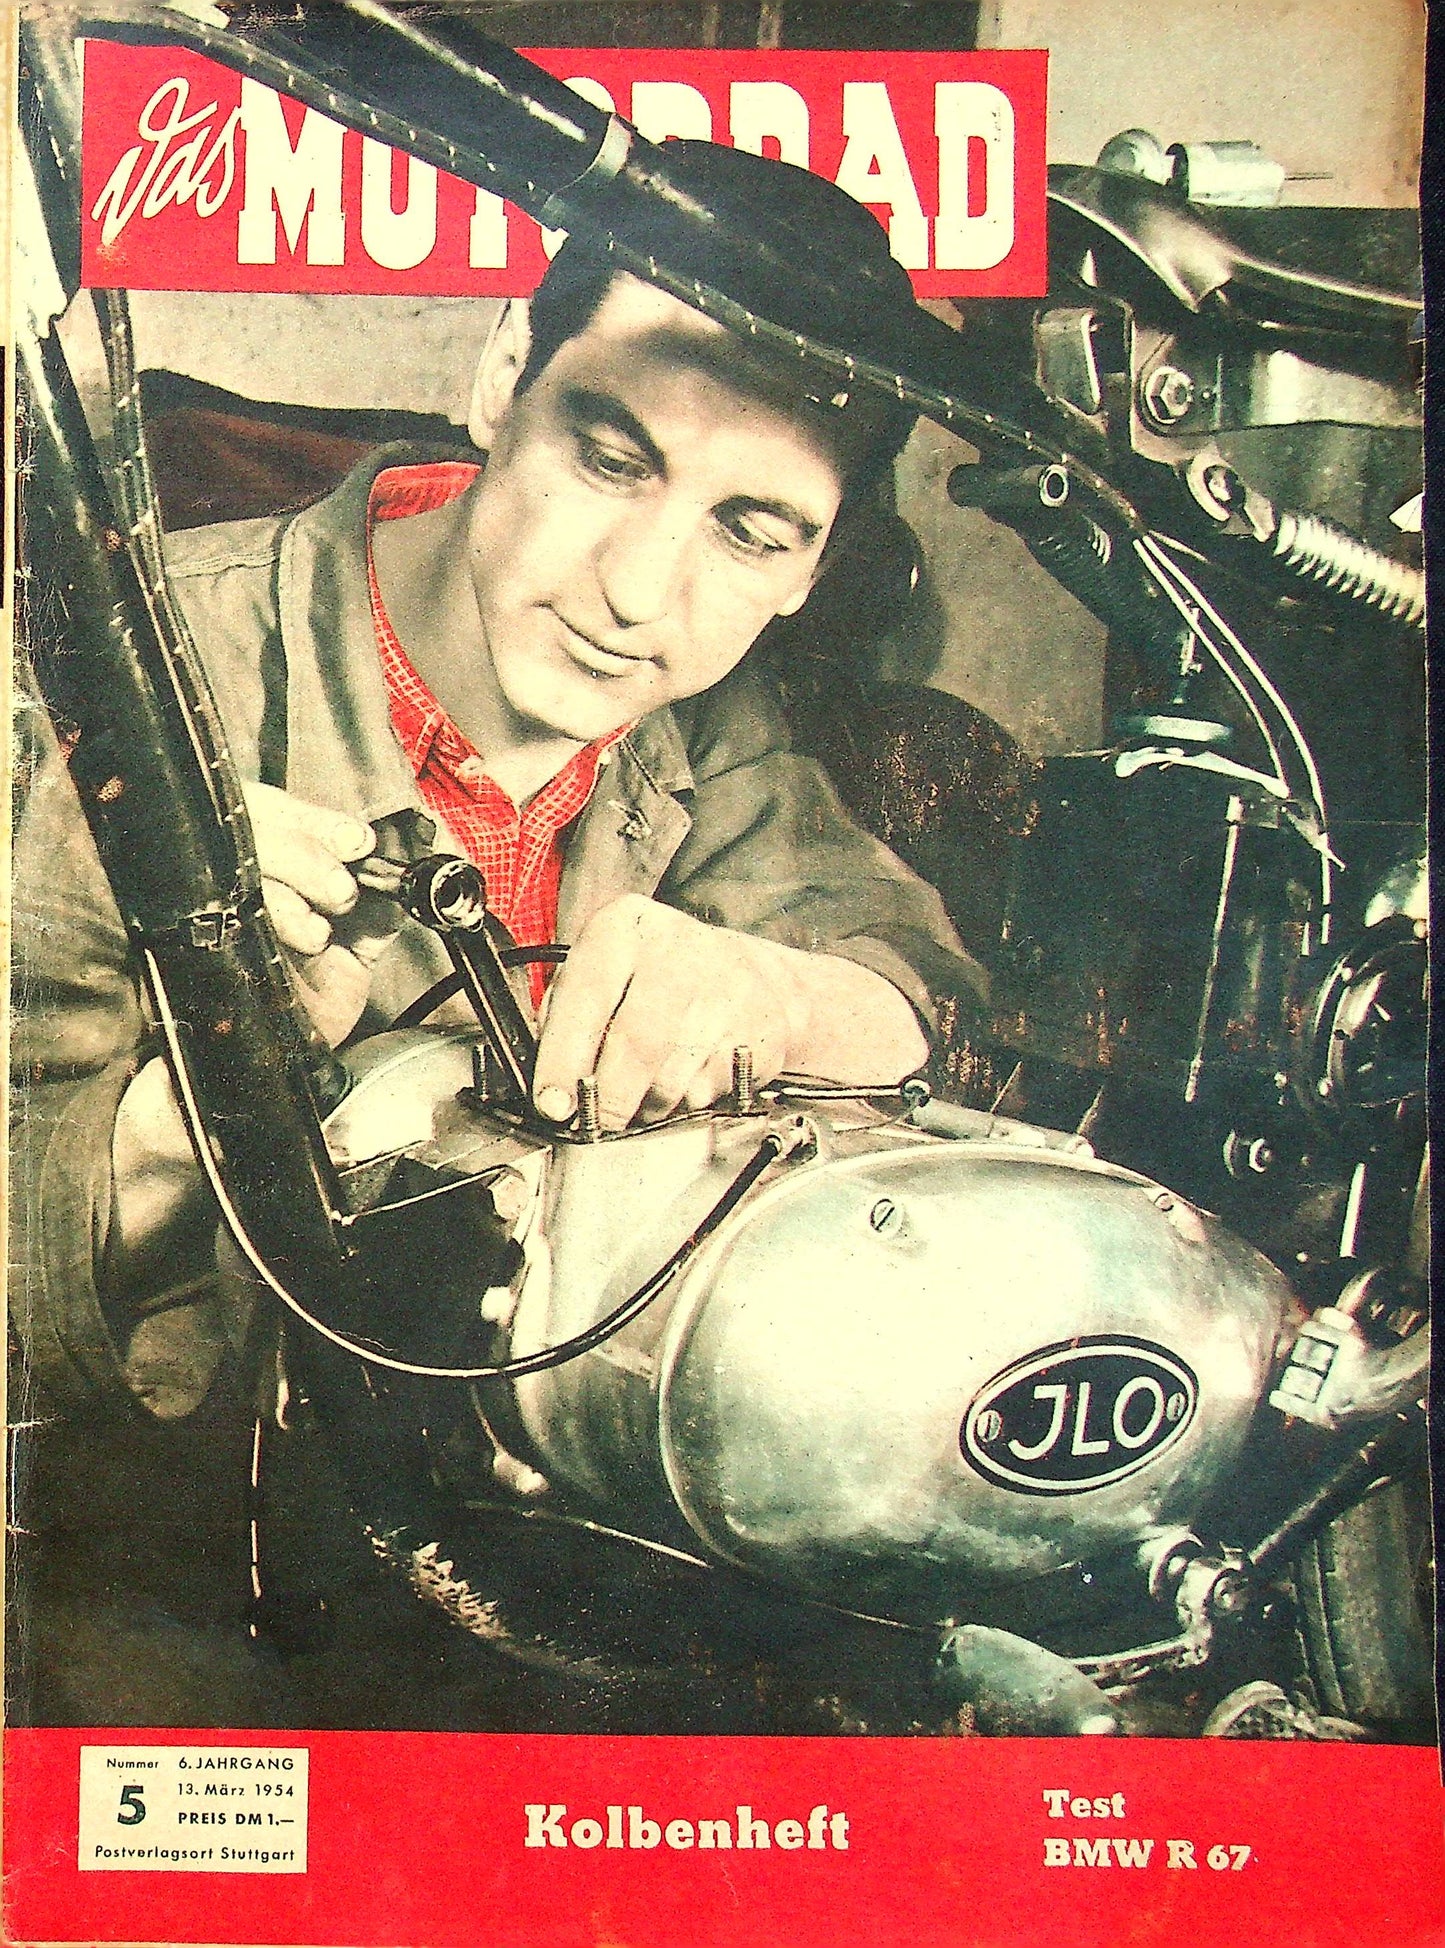 Motorrad 05/1954